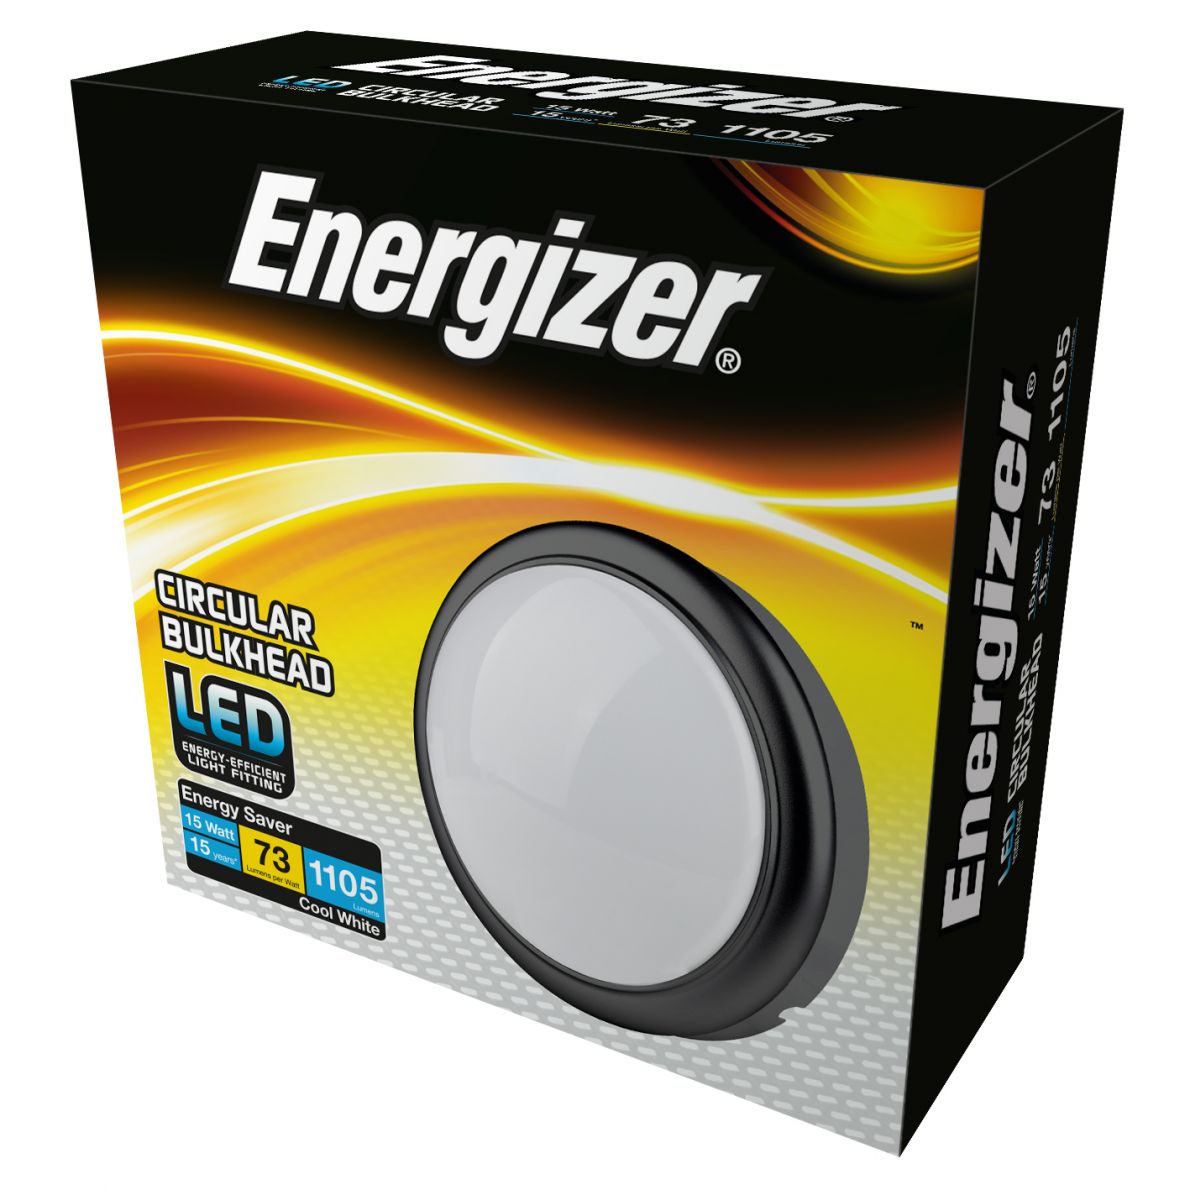 Energizer LED round bulkhead 15W S10445 